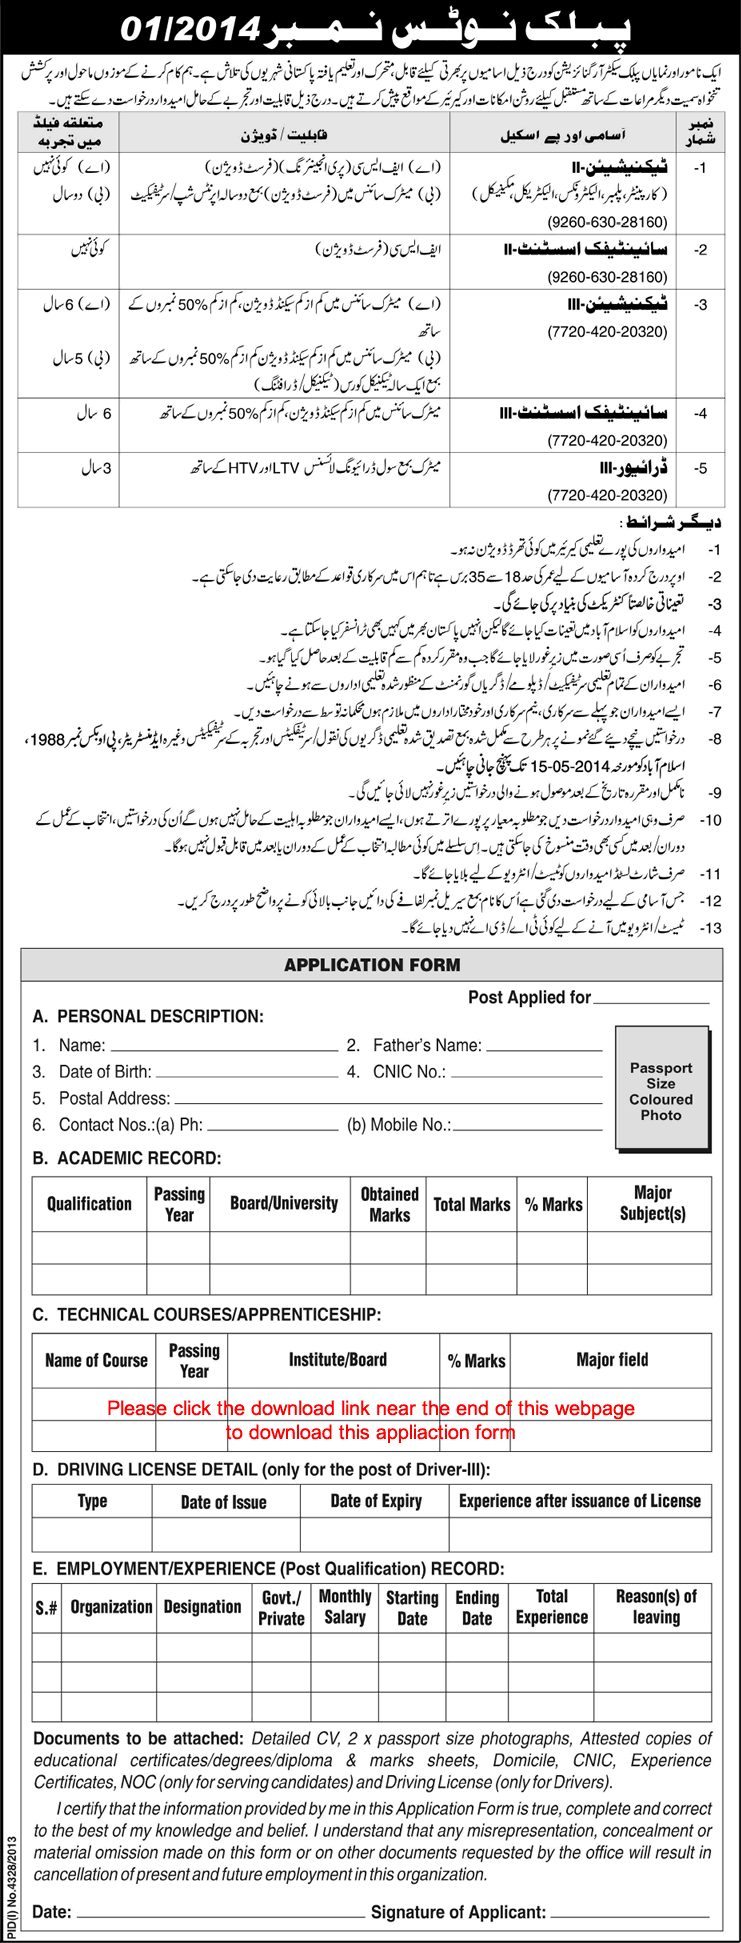 PO Box 1988 Islamabad Jobs 2014 April-May Application Form Download